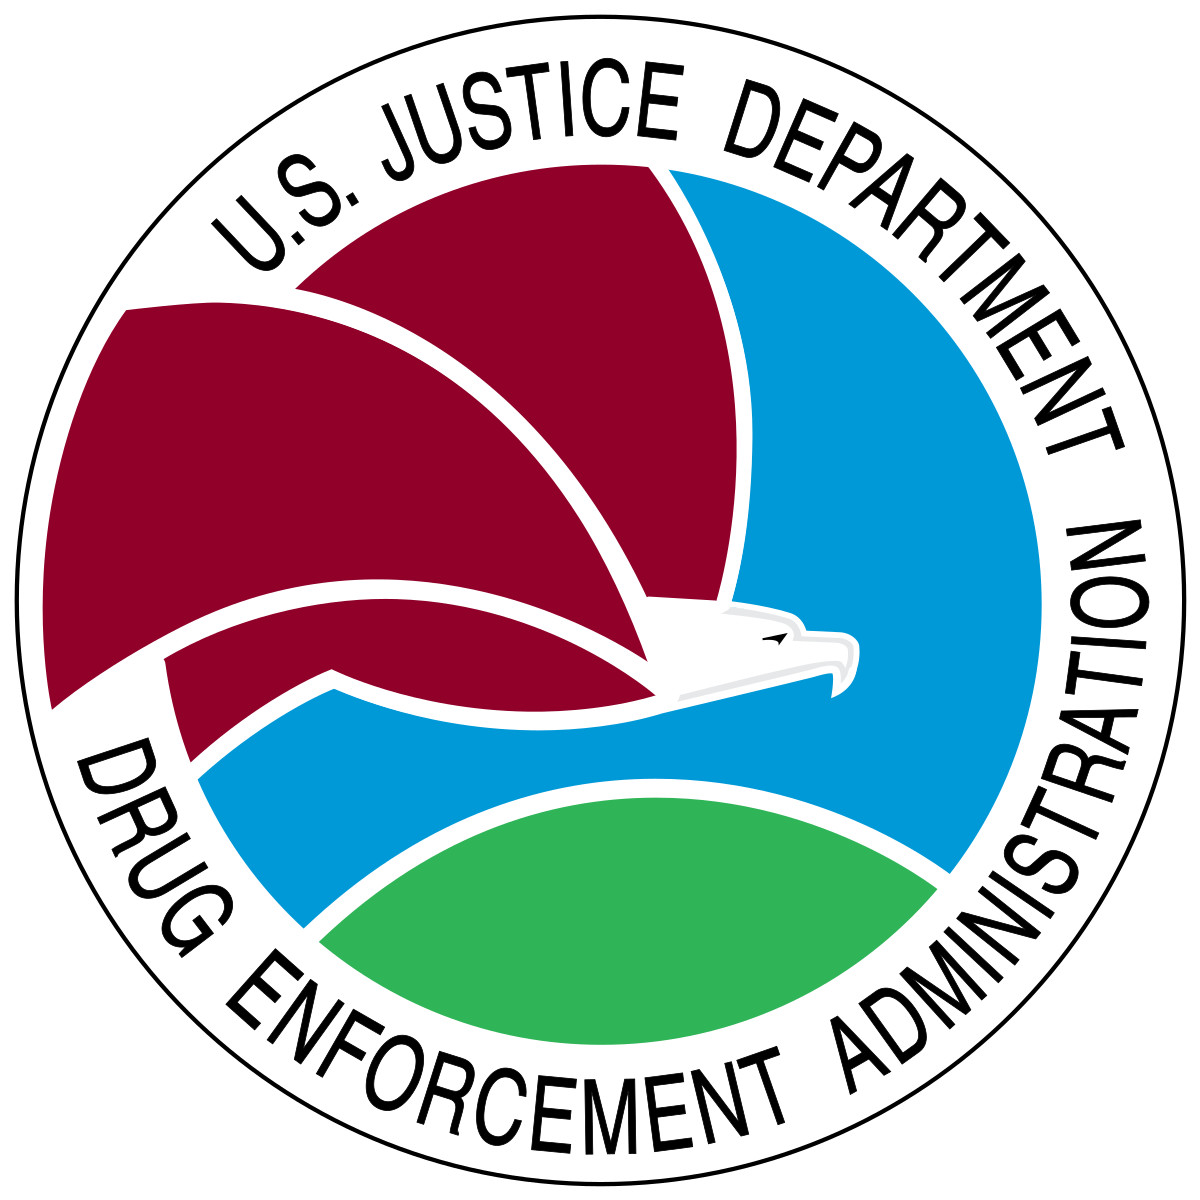 Drug Enforcement Administration, Department of Justice